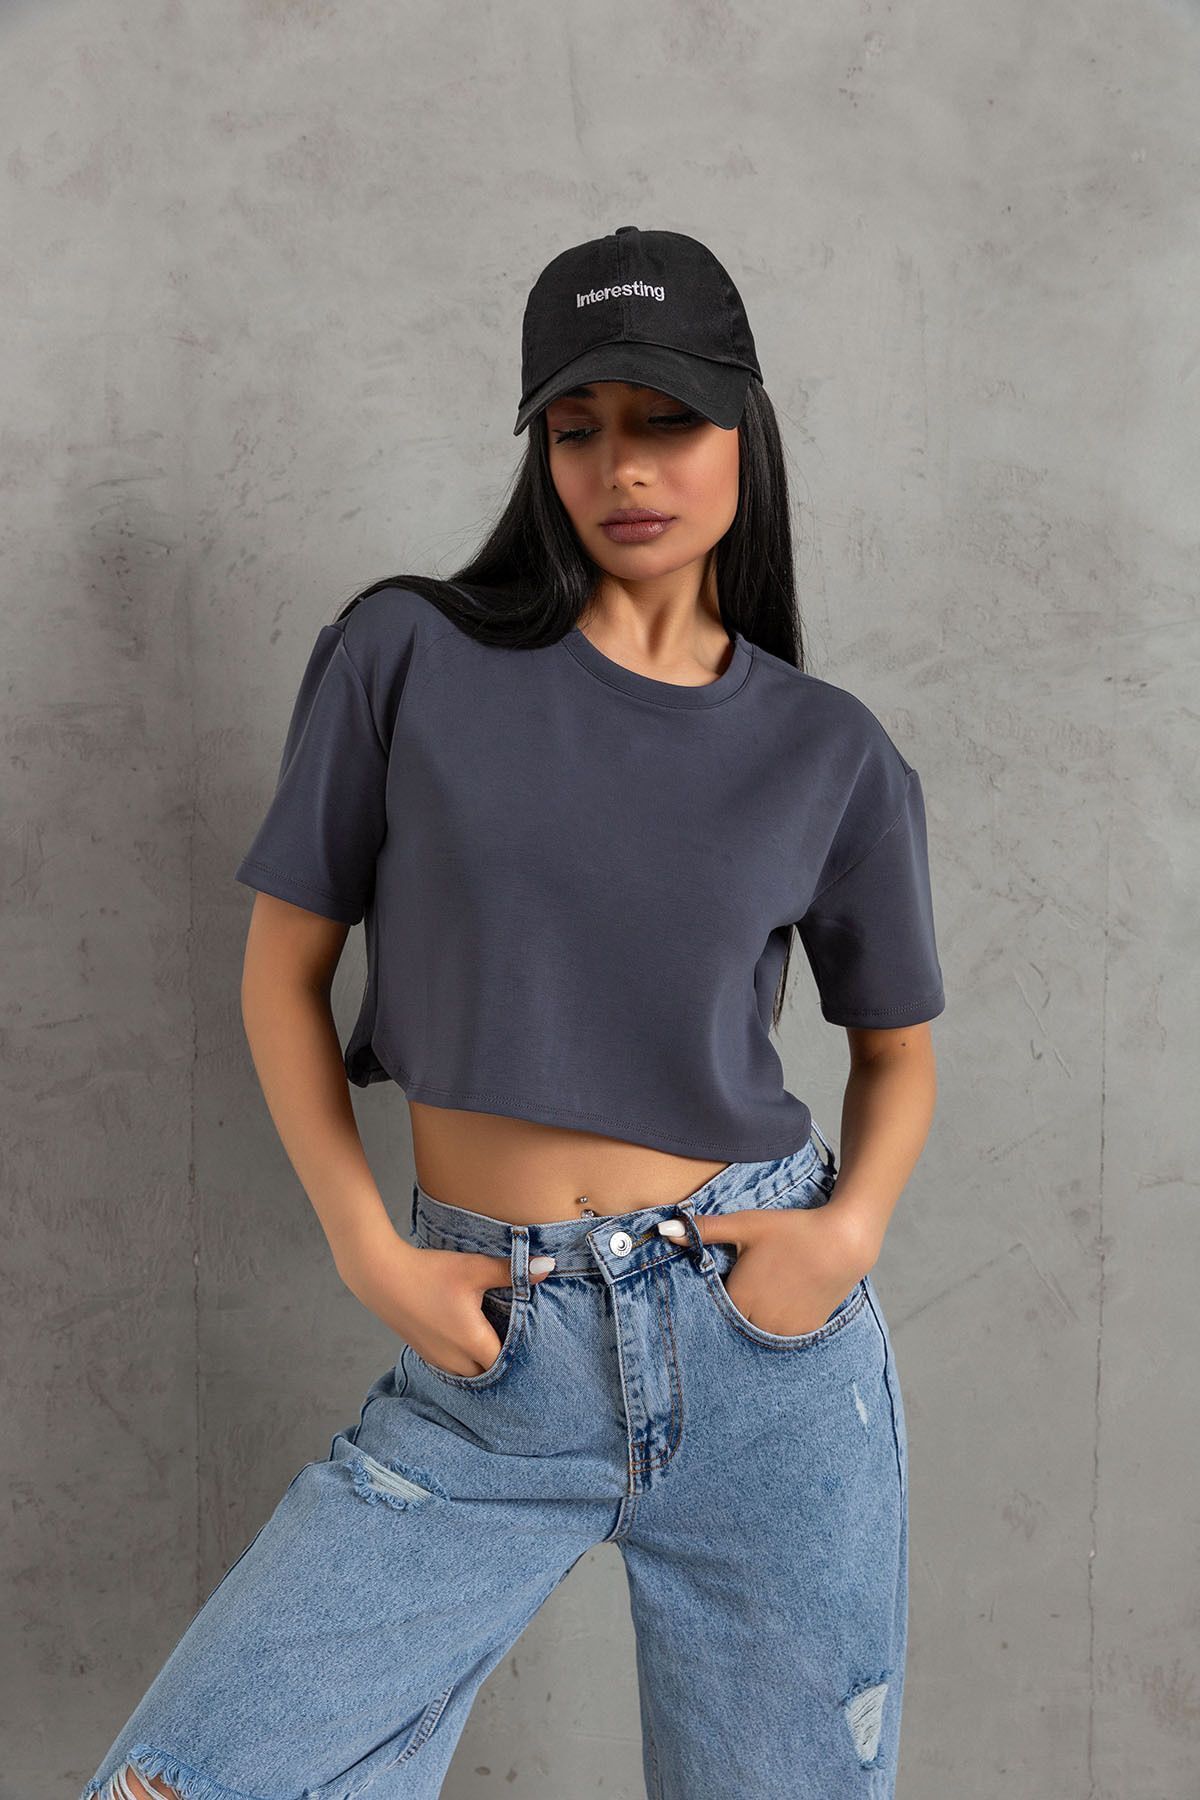 Domoda Füme Ultra Yumuşak Dokunuş: Modal Crop Top Serisi Kadın Tişört @savona